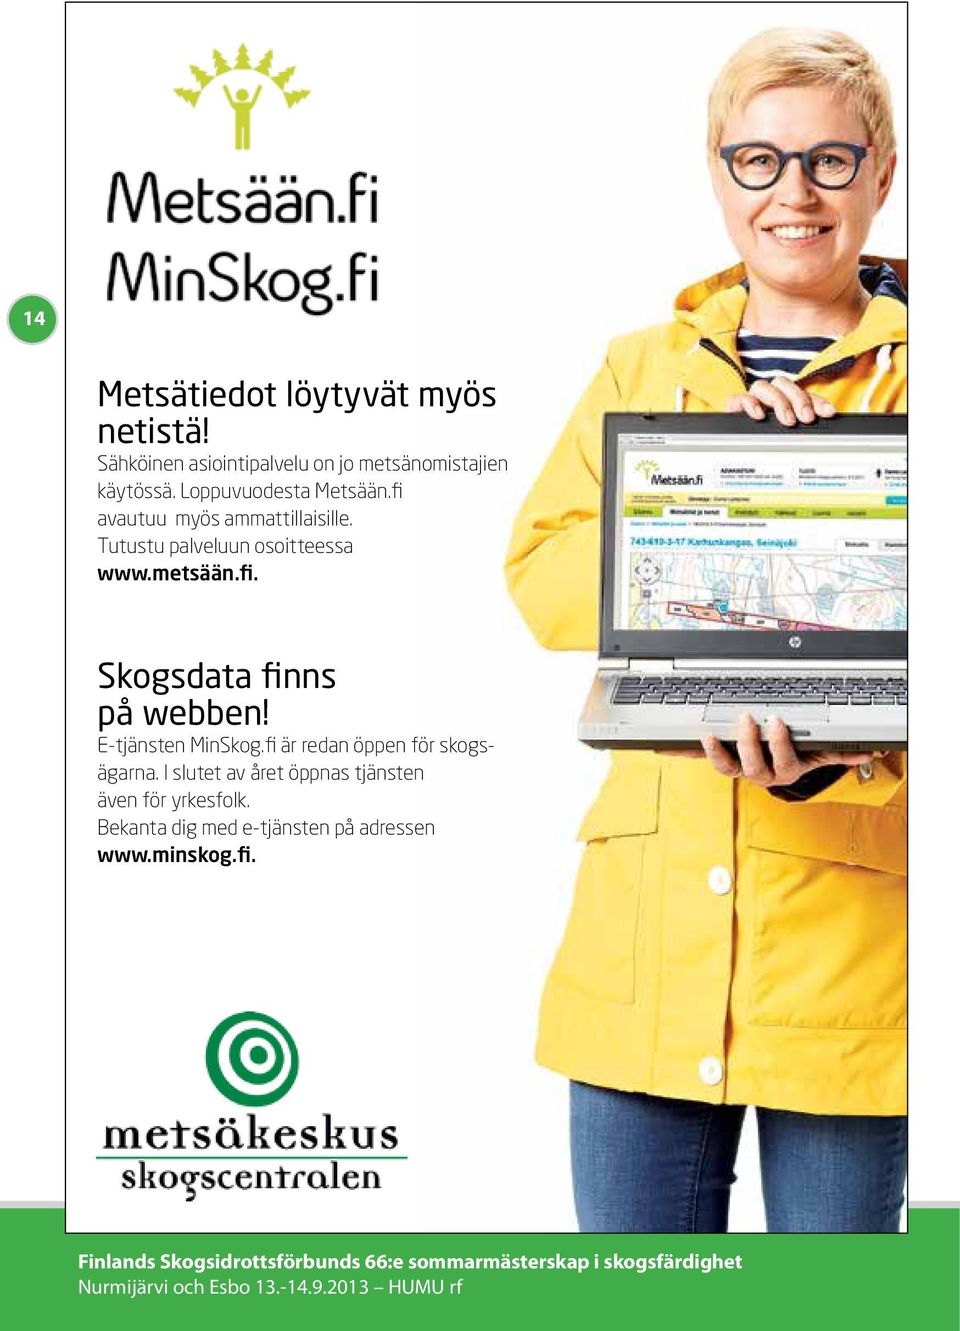 E-tjänsten MinSkog.fi är redan öppen för skogsägarna. I slutet av året öppnas tjänsten även för yrkesfolk.